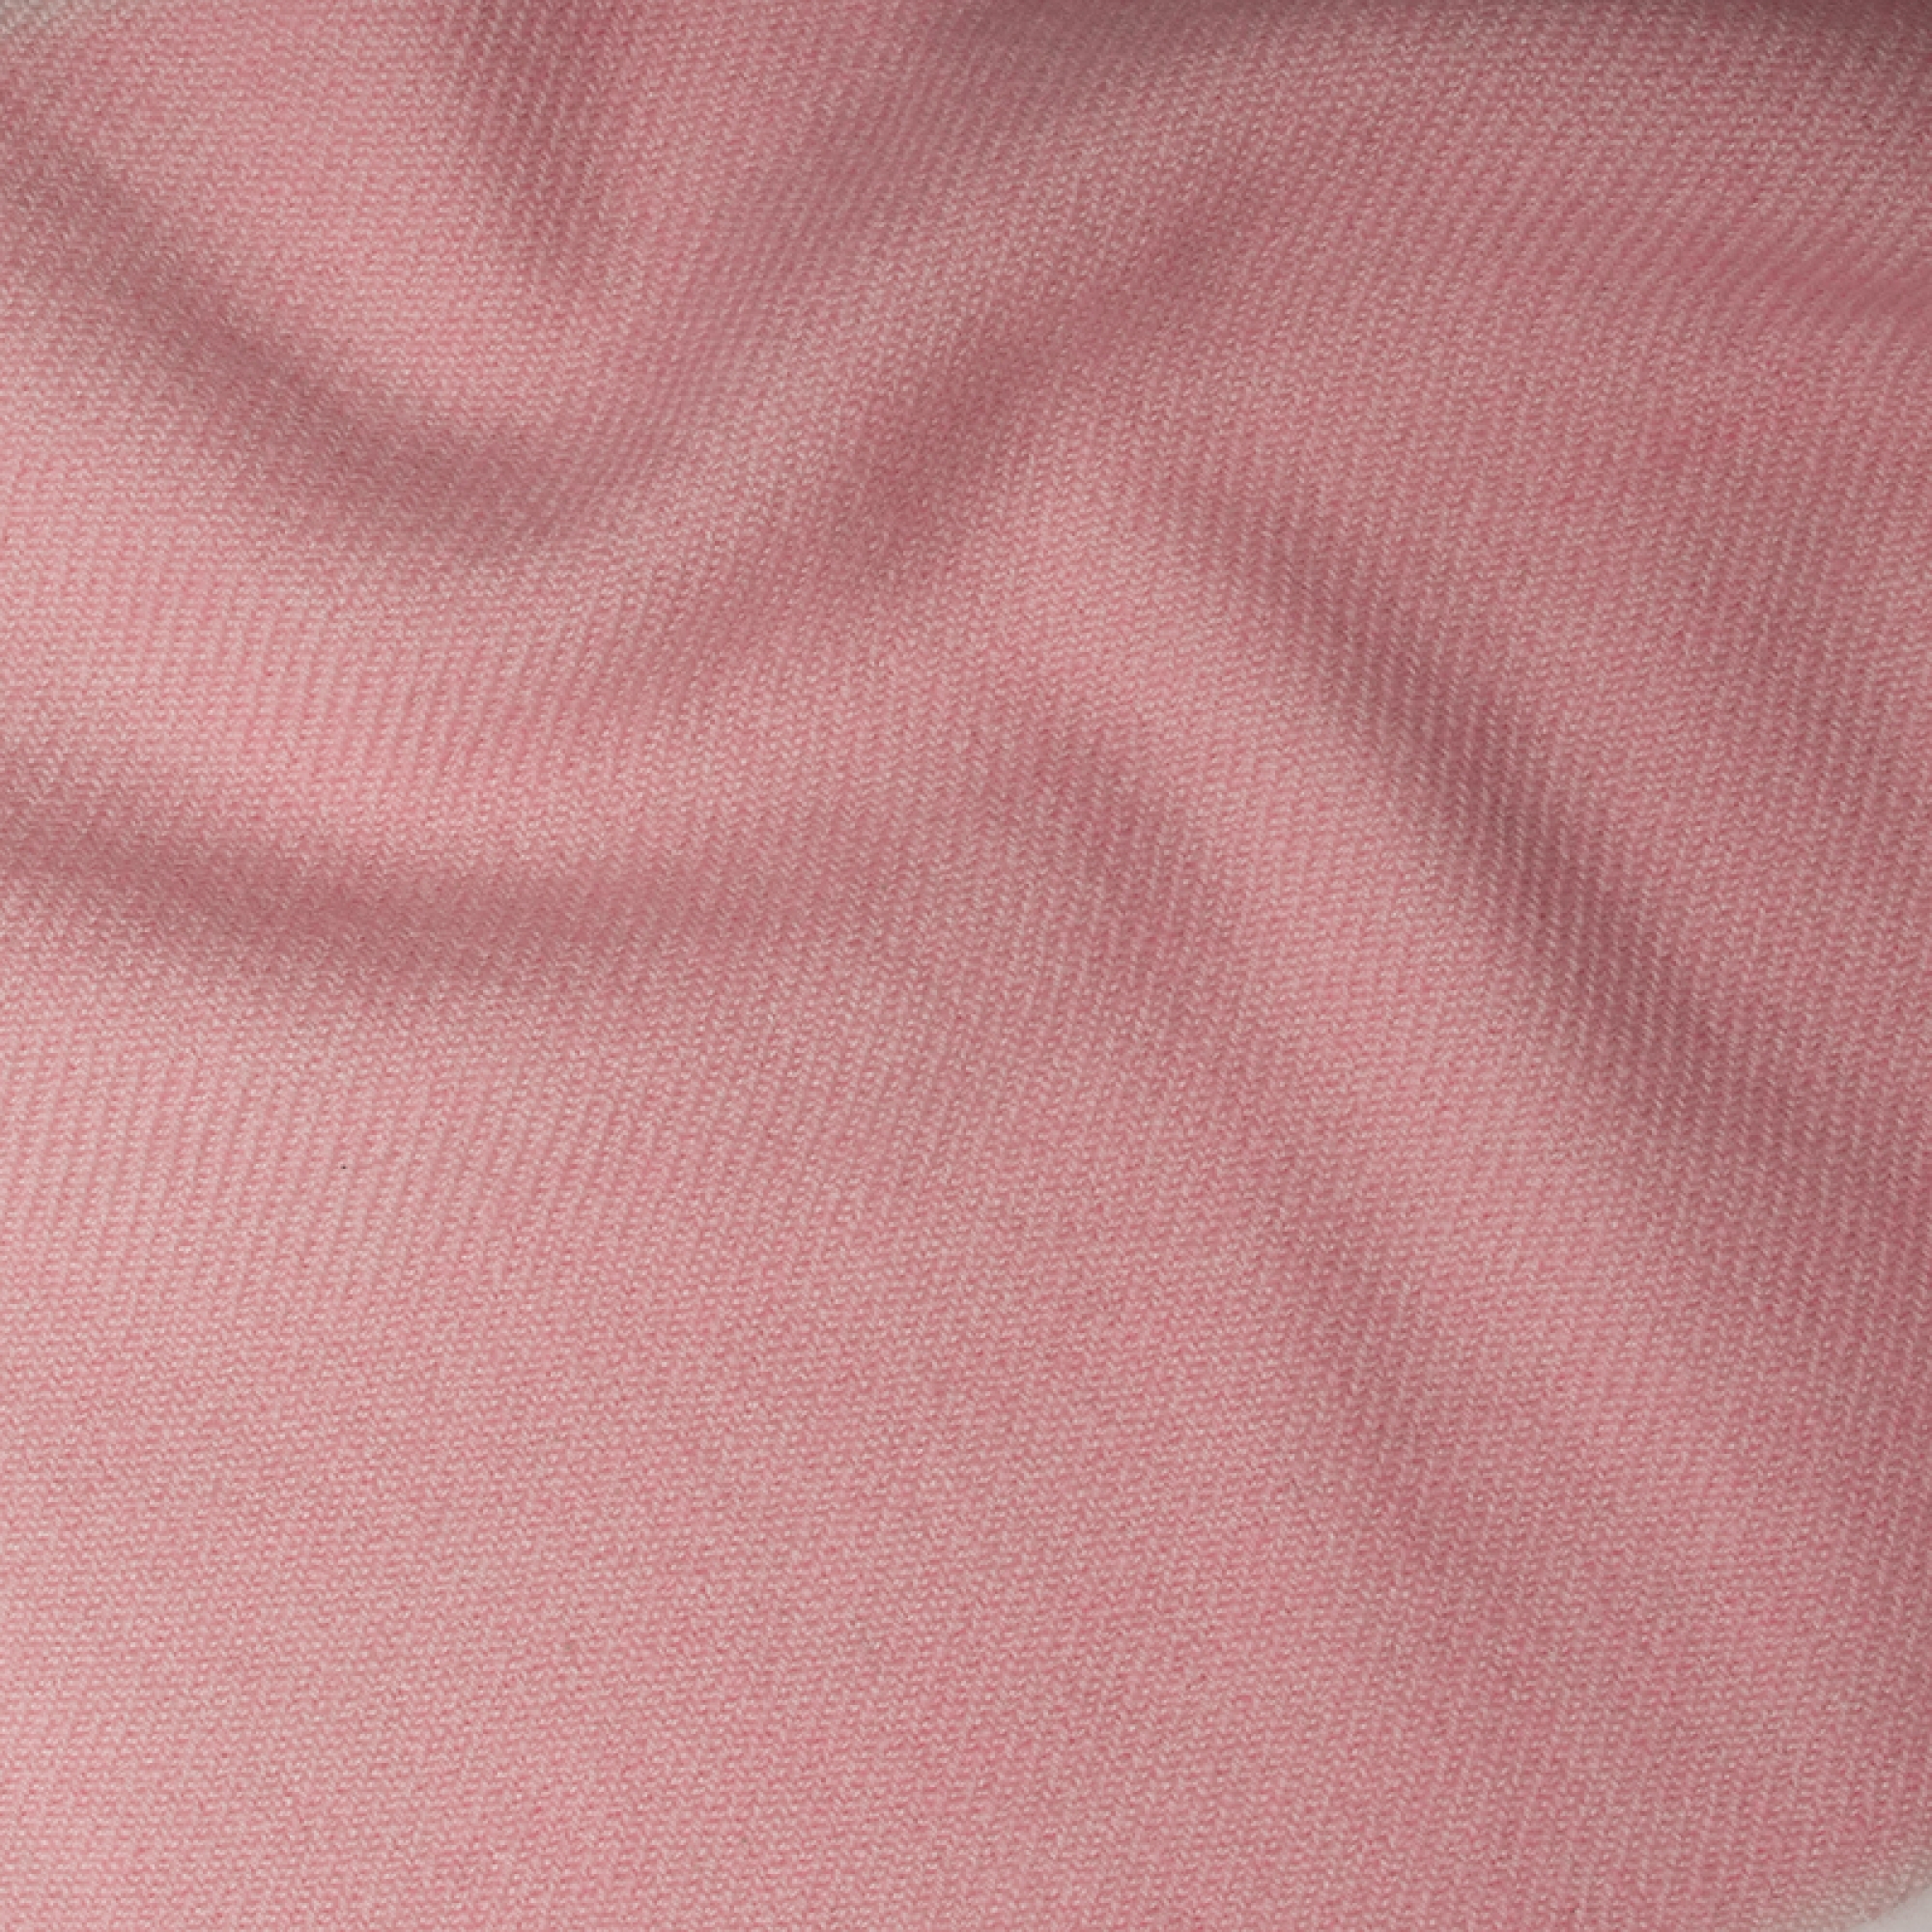 Cashmere accessori plaid frisbi 147 x 203 rosa confetto 147 x 203 cm